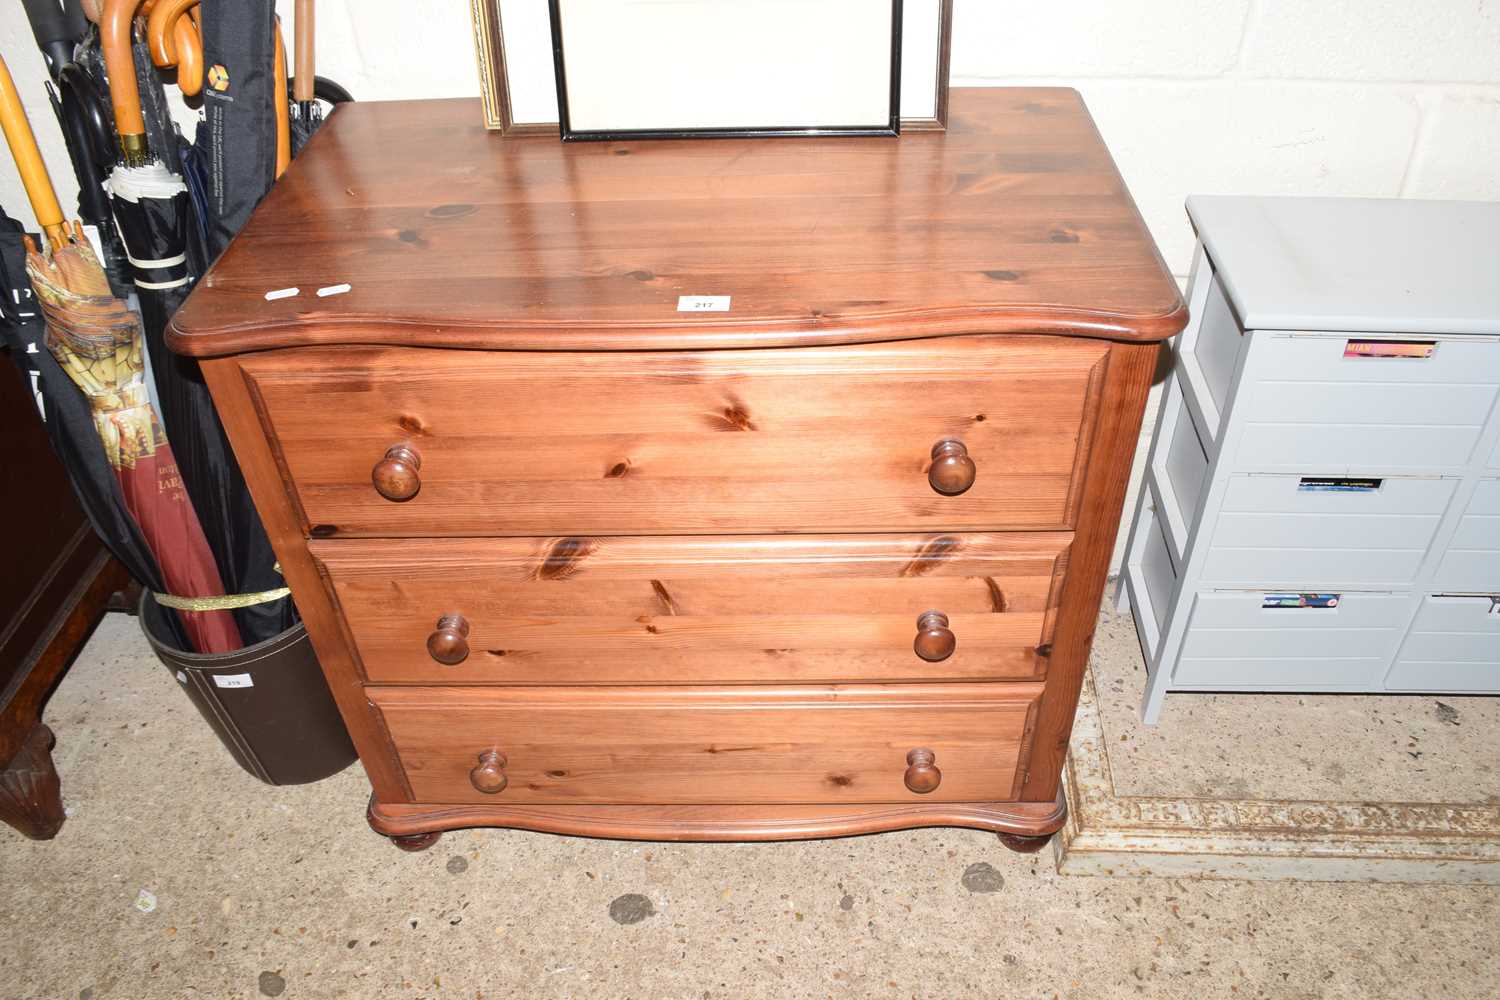 Modern pine three drawer chest